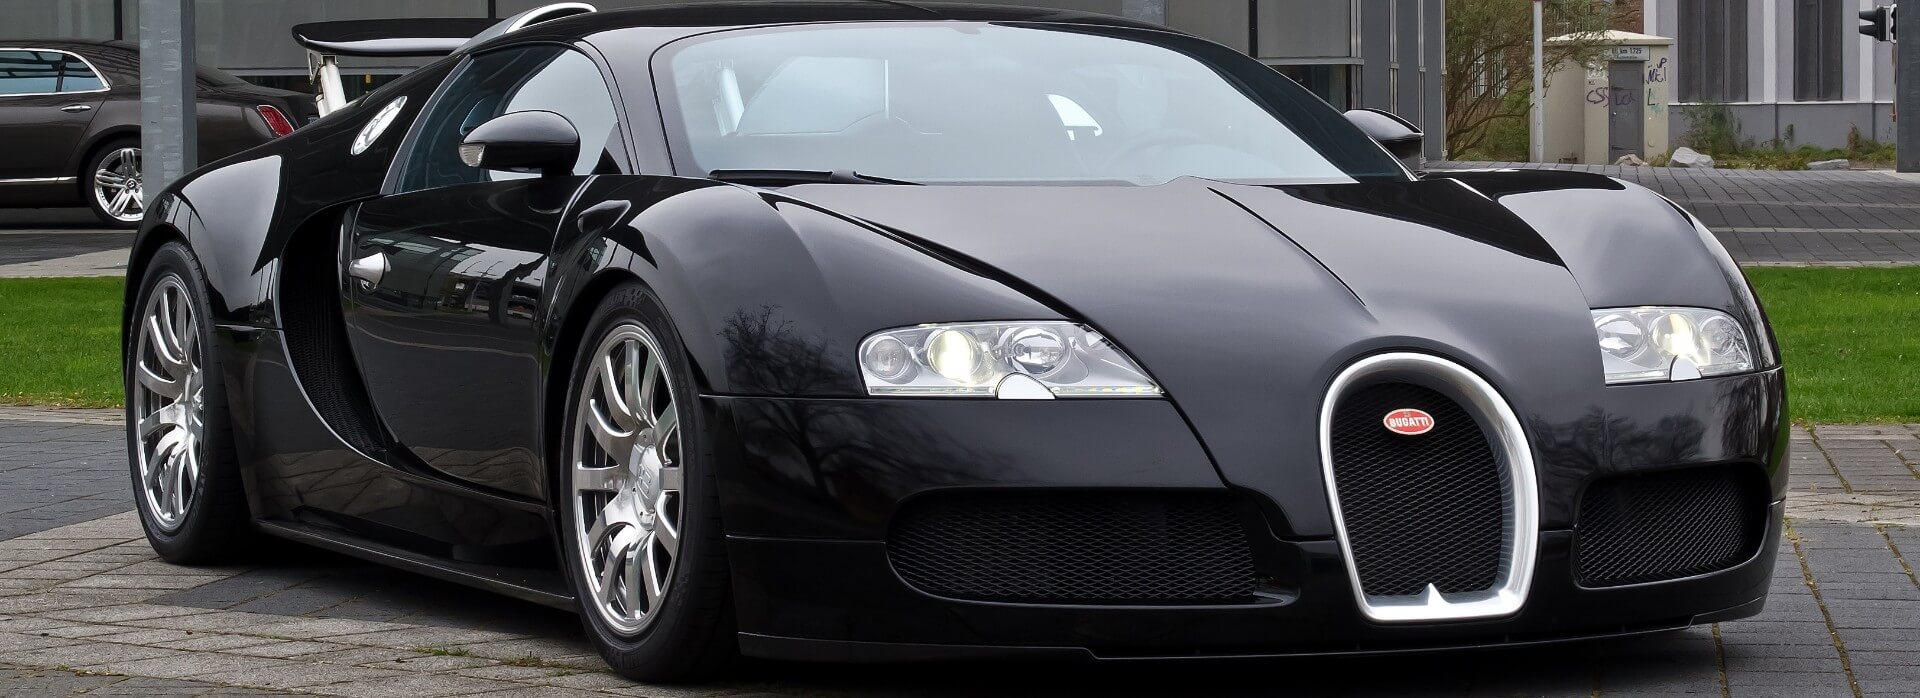 ТОП авто в которых сложнее всего менять масло, Bugatti Veyron